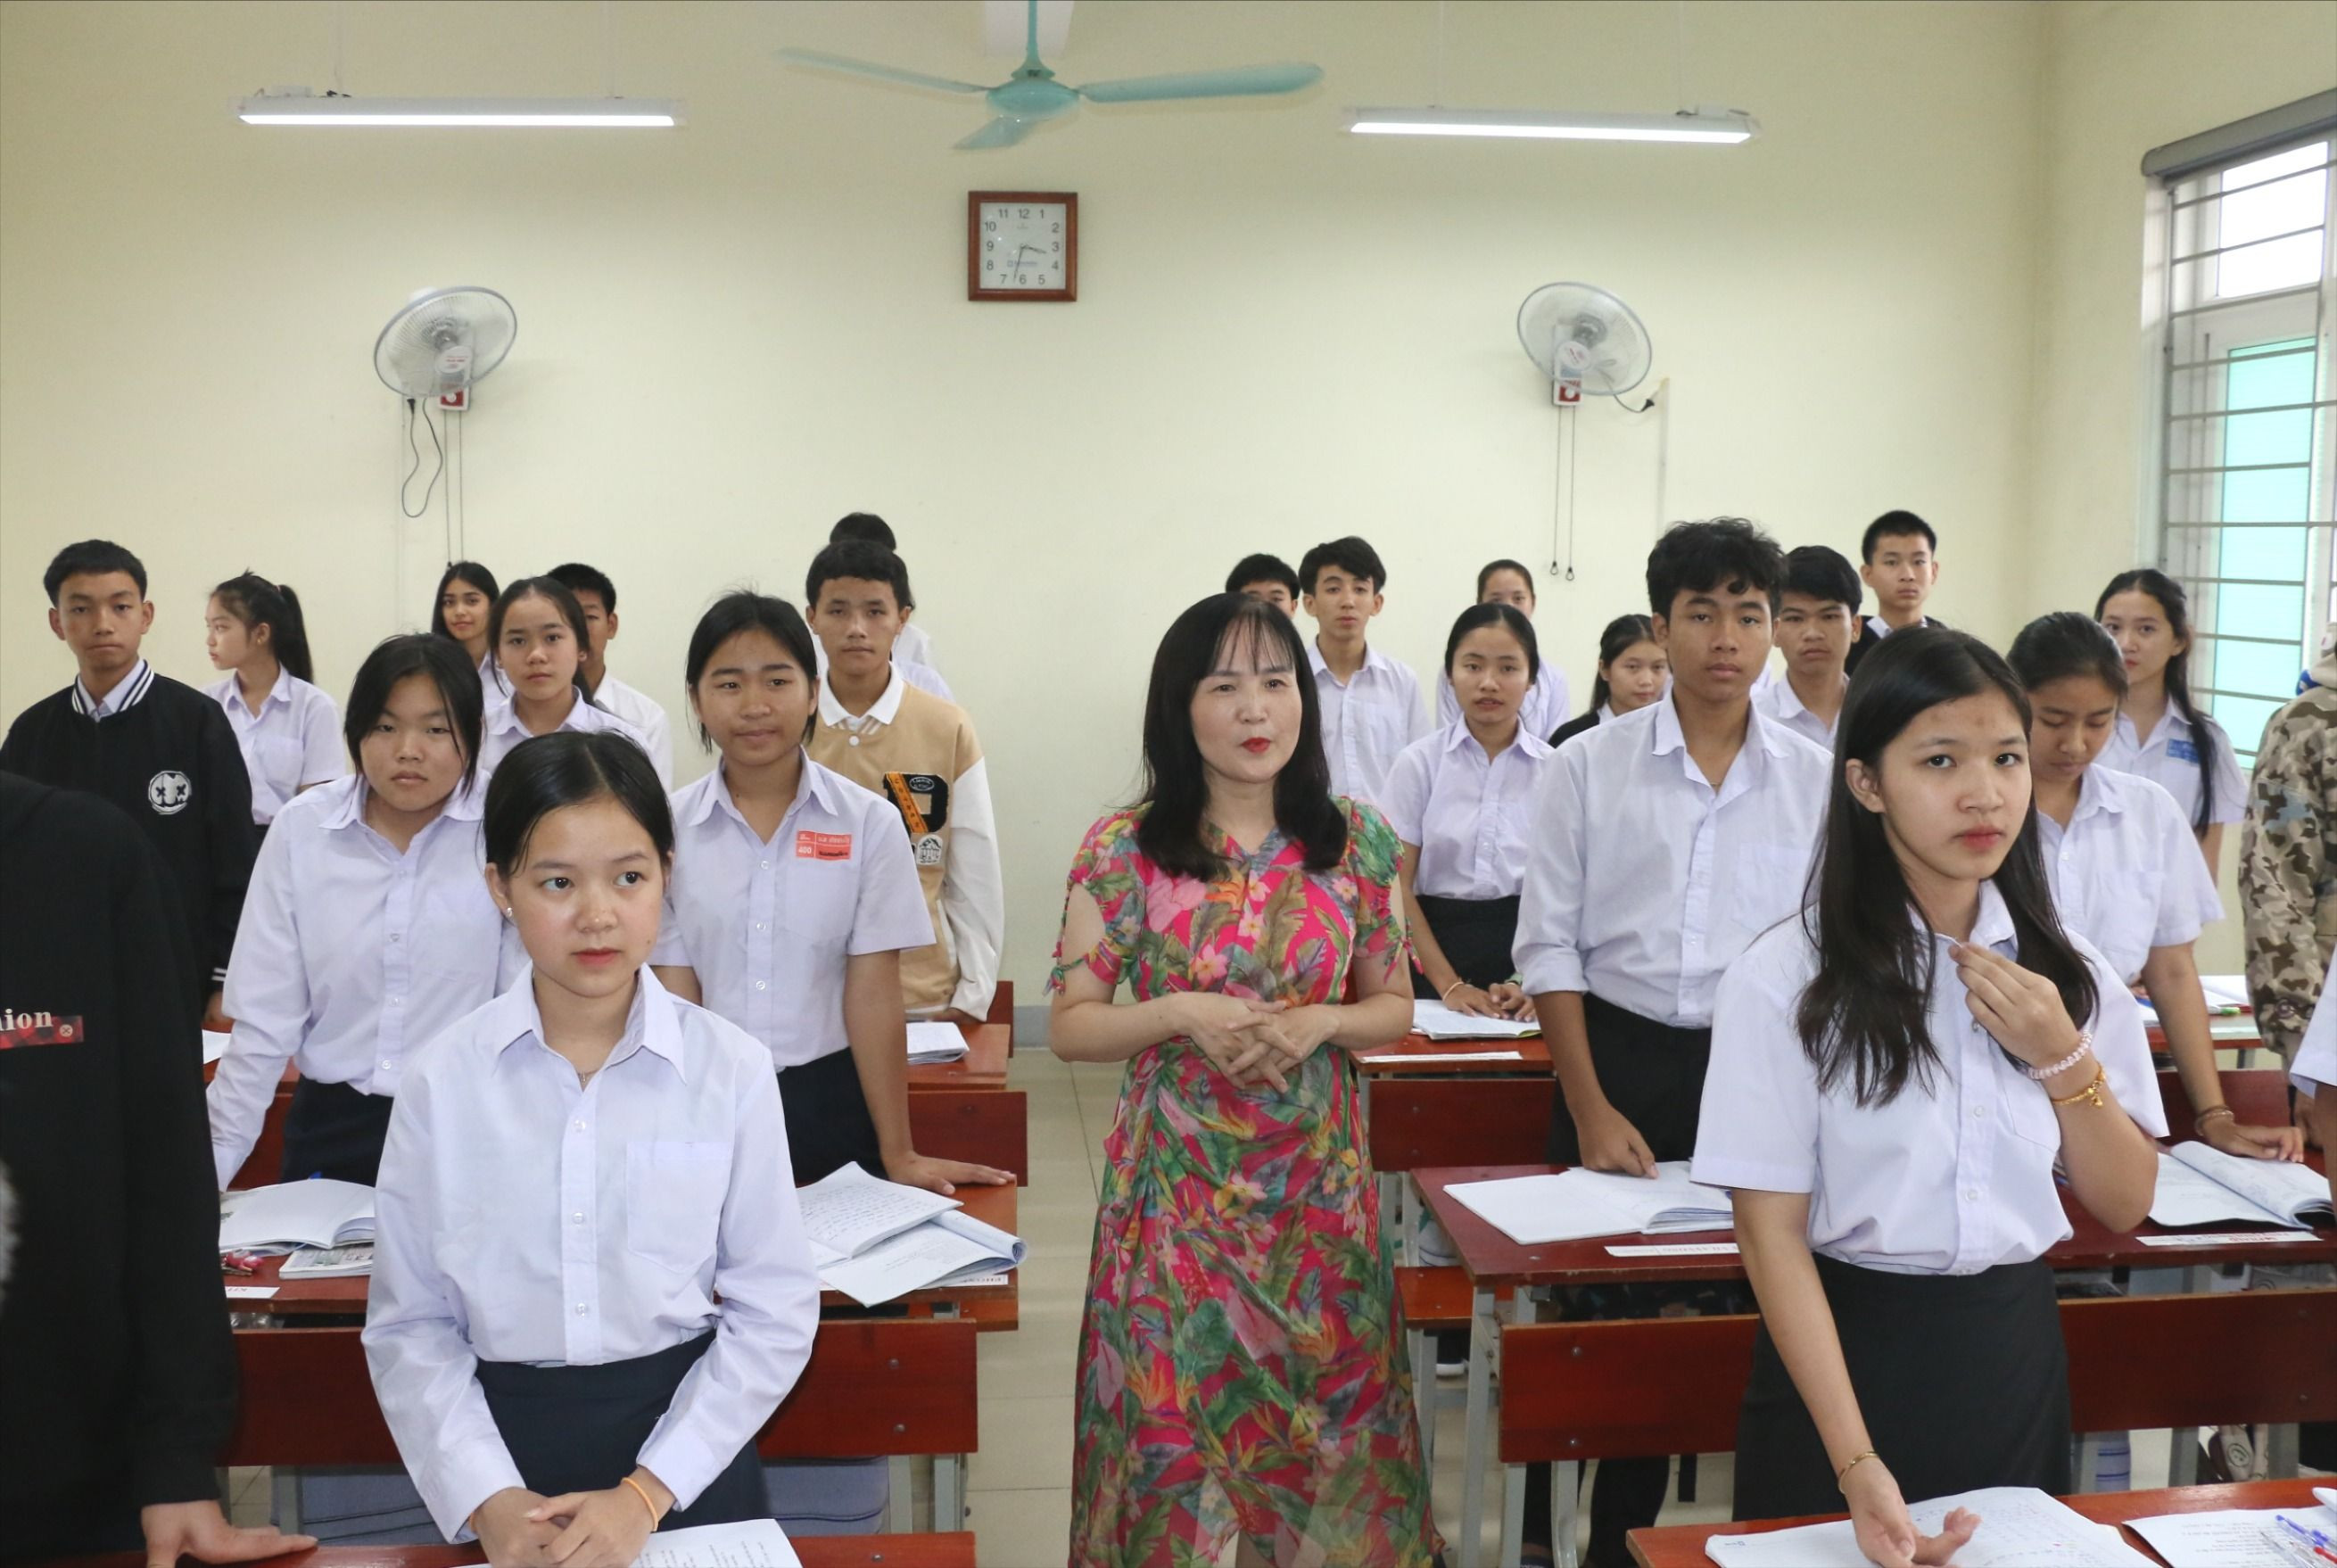 bna_Giờ học Tiếng Việt của các lưu học sinh Lào. Ảnh - Mỹ Hà.JPG